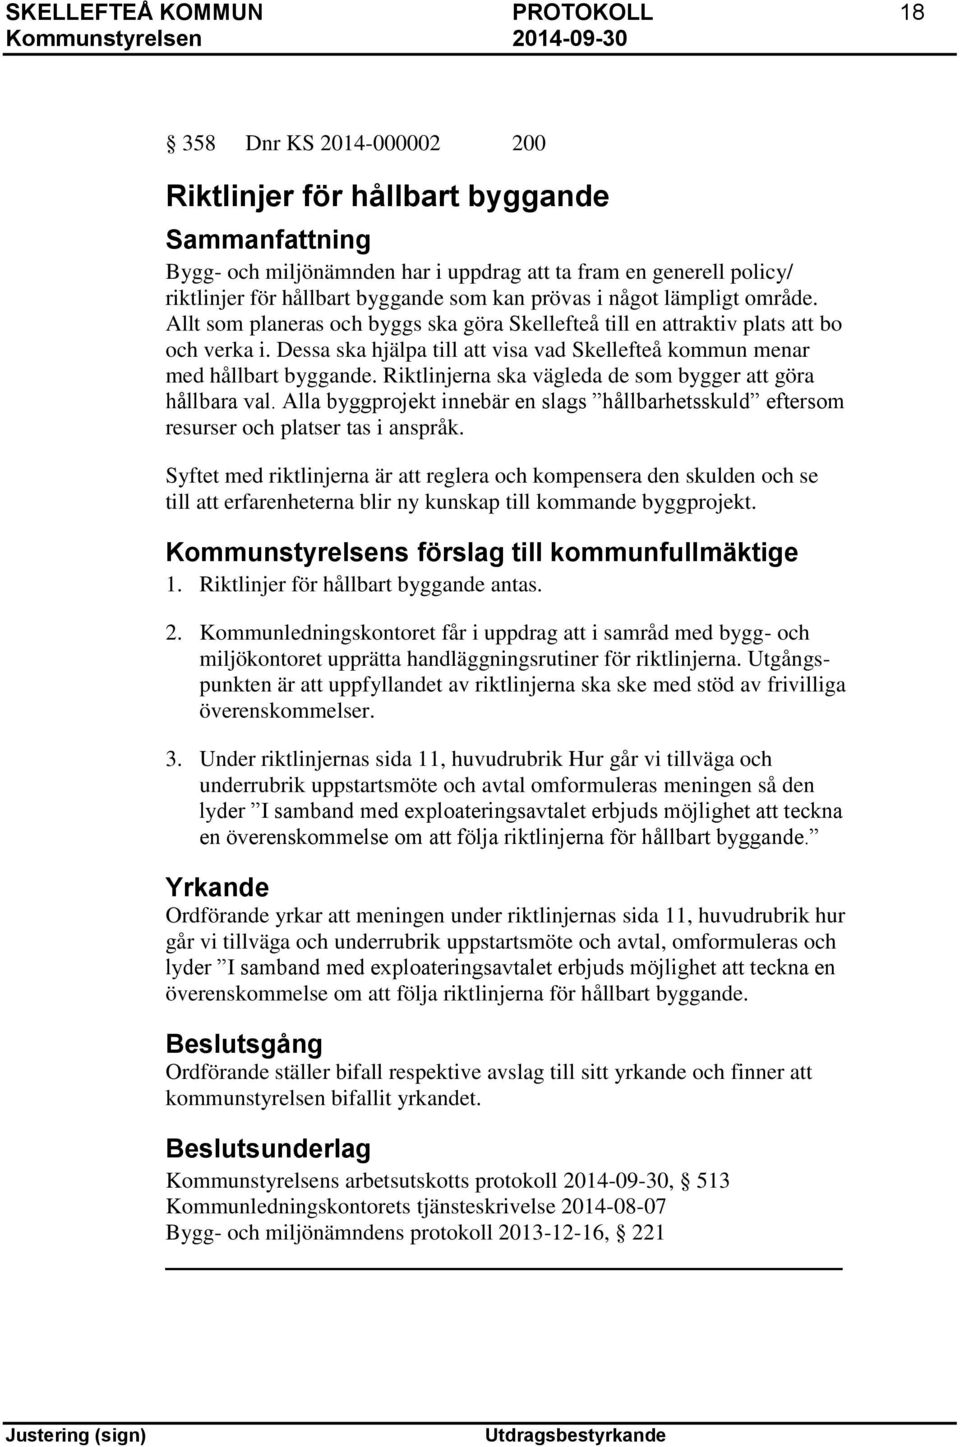 Dessa ska hjälpa till att visa vad Skellefteå kommun menar med hållbart byggande. Riktlinjerna ska vägleda de som bygger att göra hållbara val.